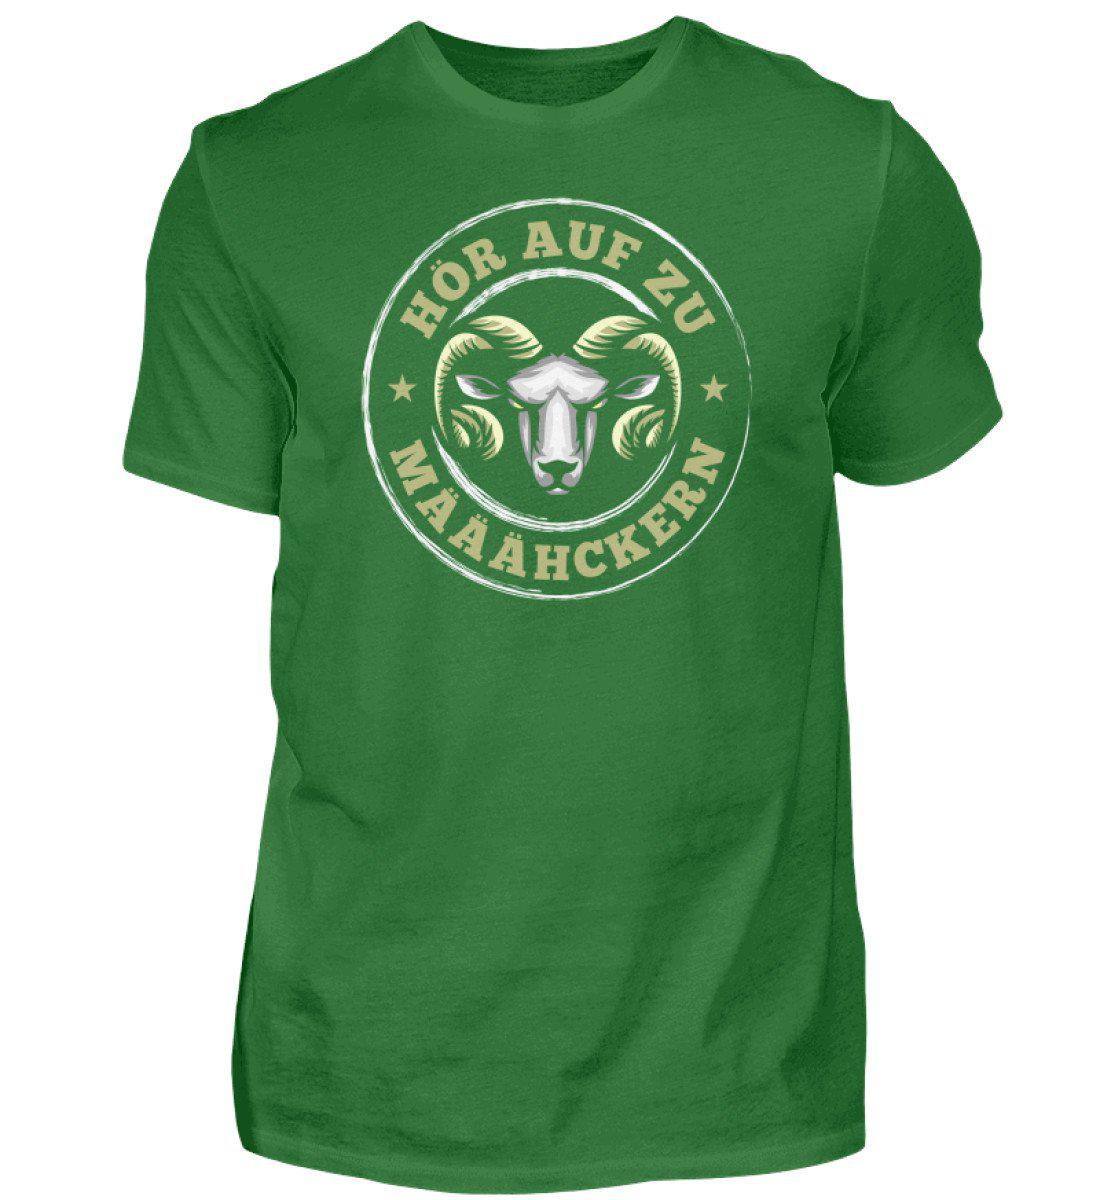 Hör auf zu määähckern · Herren T-Shirt-Herren Basic T-Shirt-Kelly Green-S-Agrarstarz